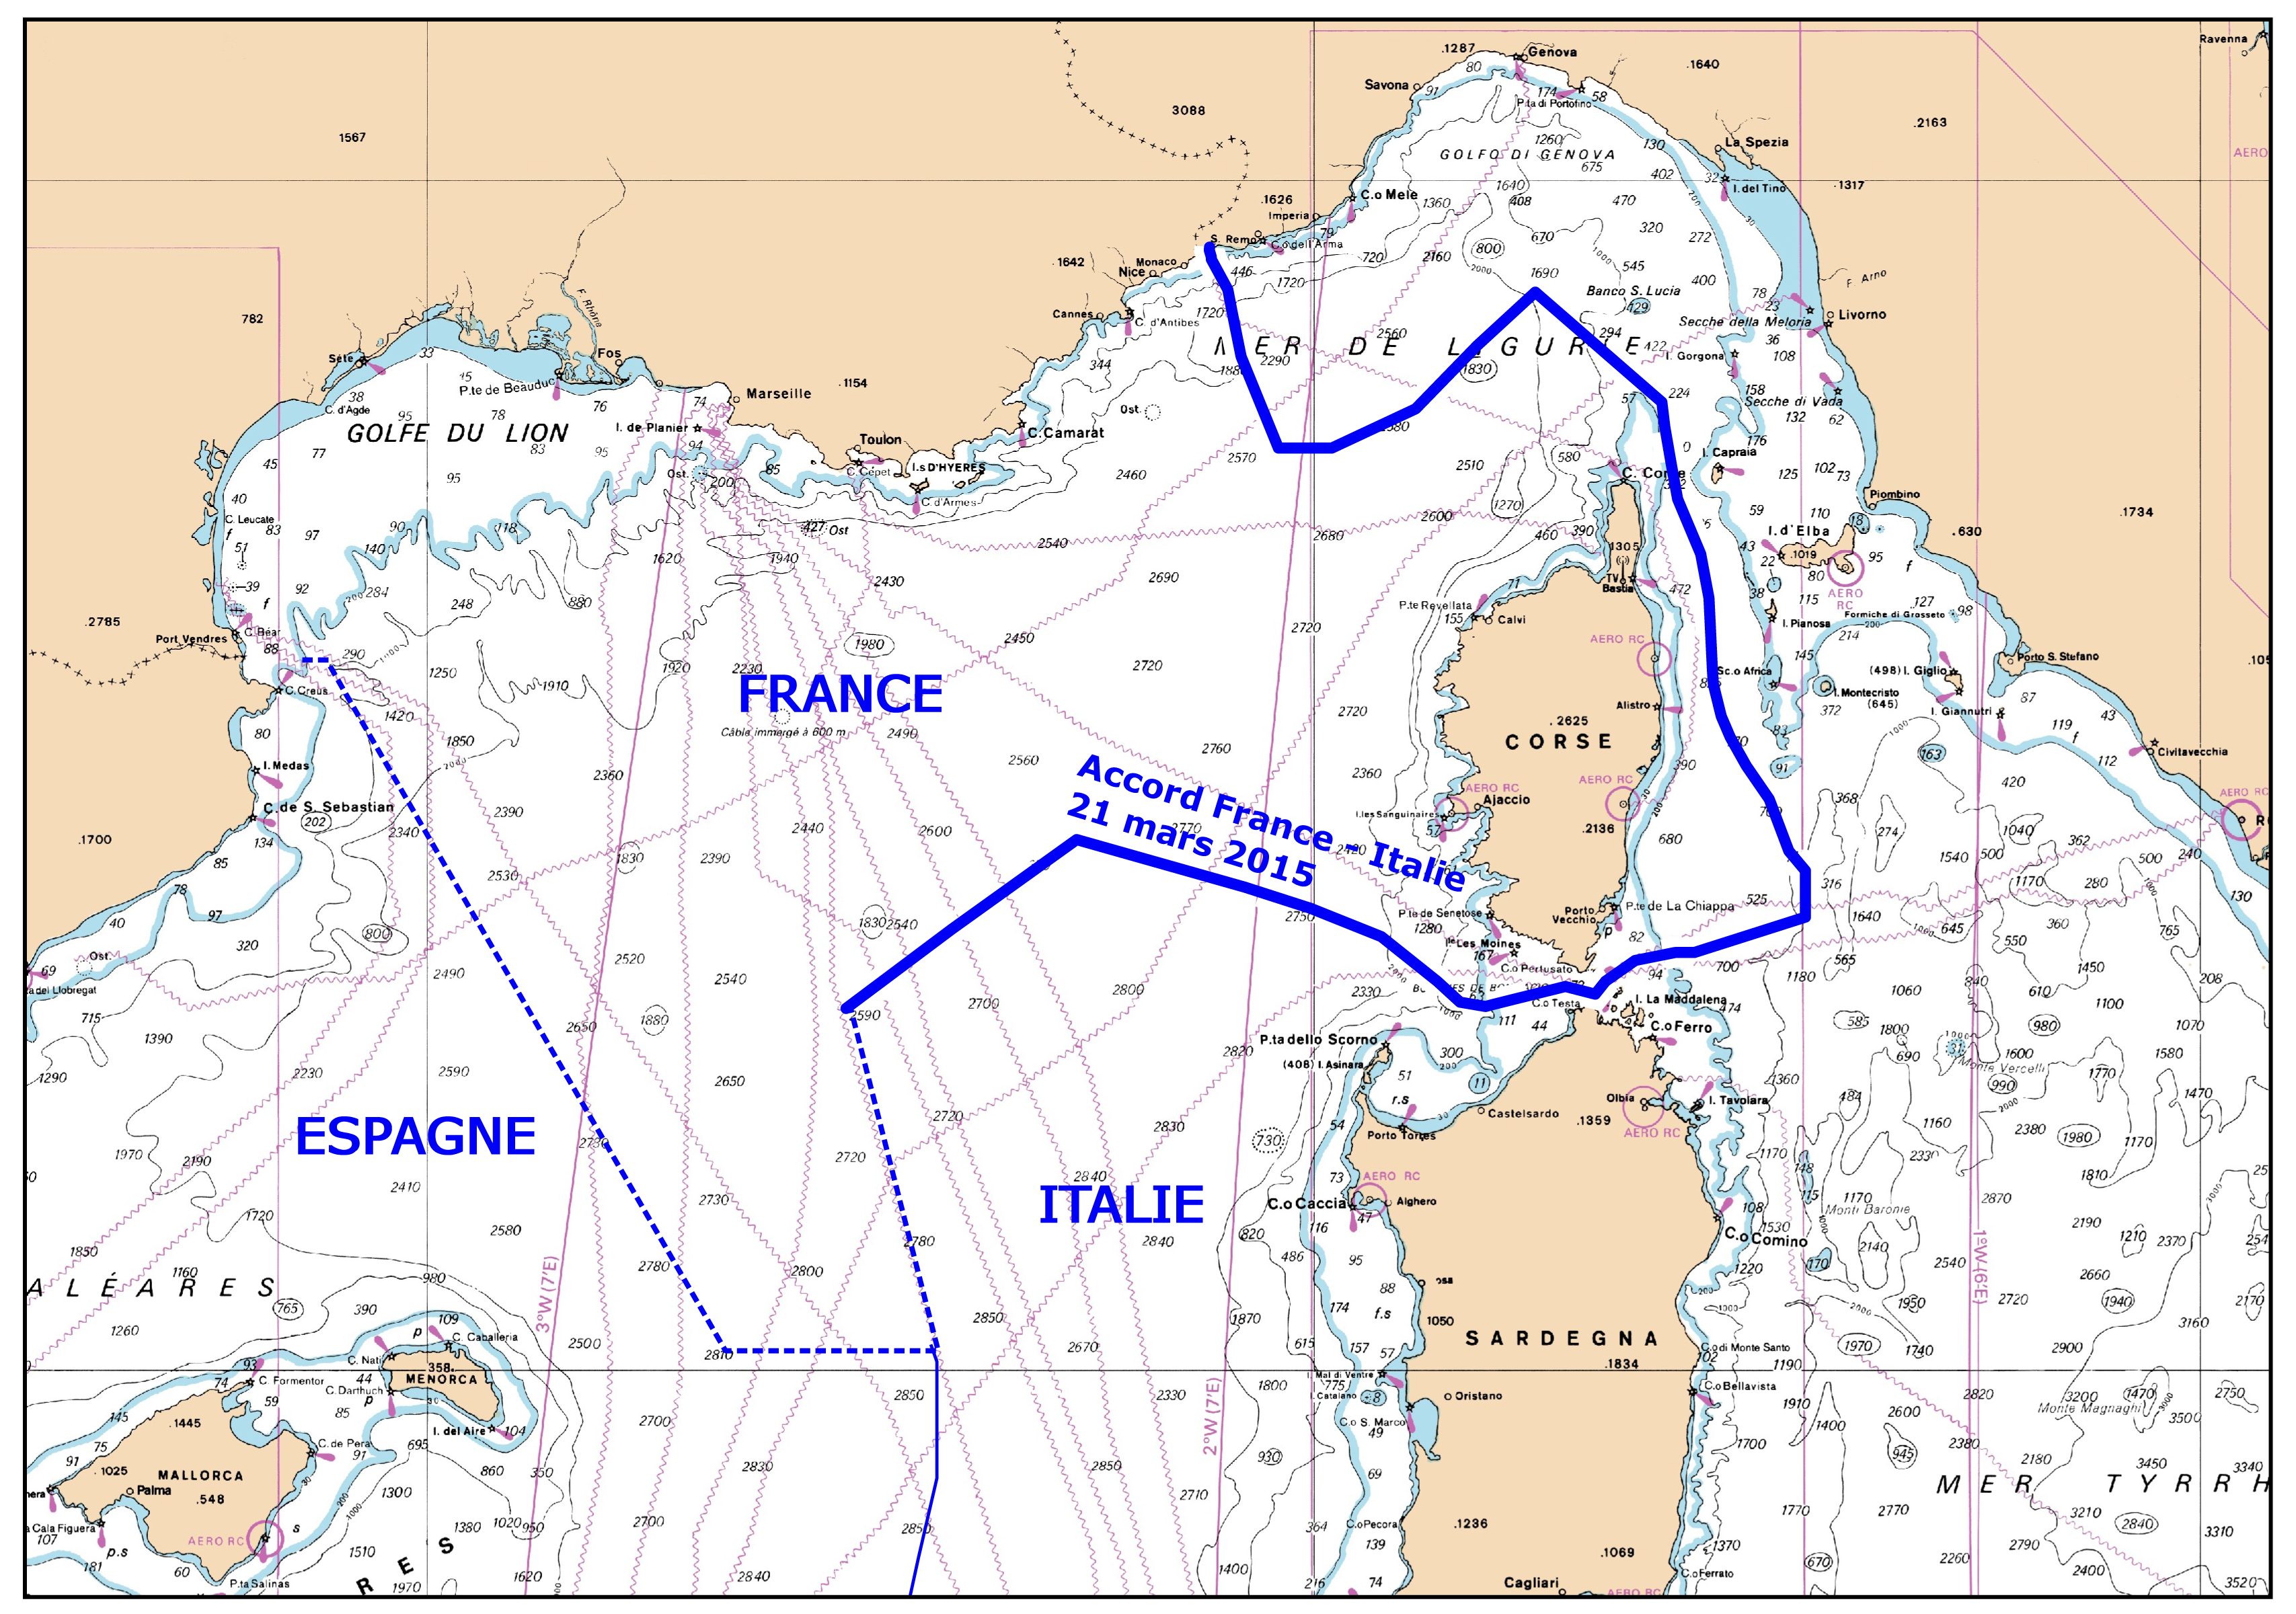  Le « mystère » des frontières maritimes franco-italiennes fait polémique en Italie